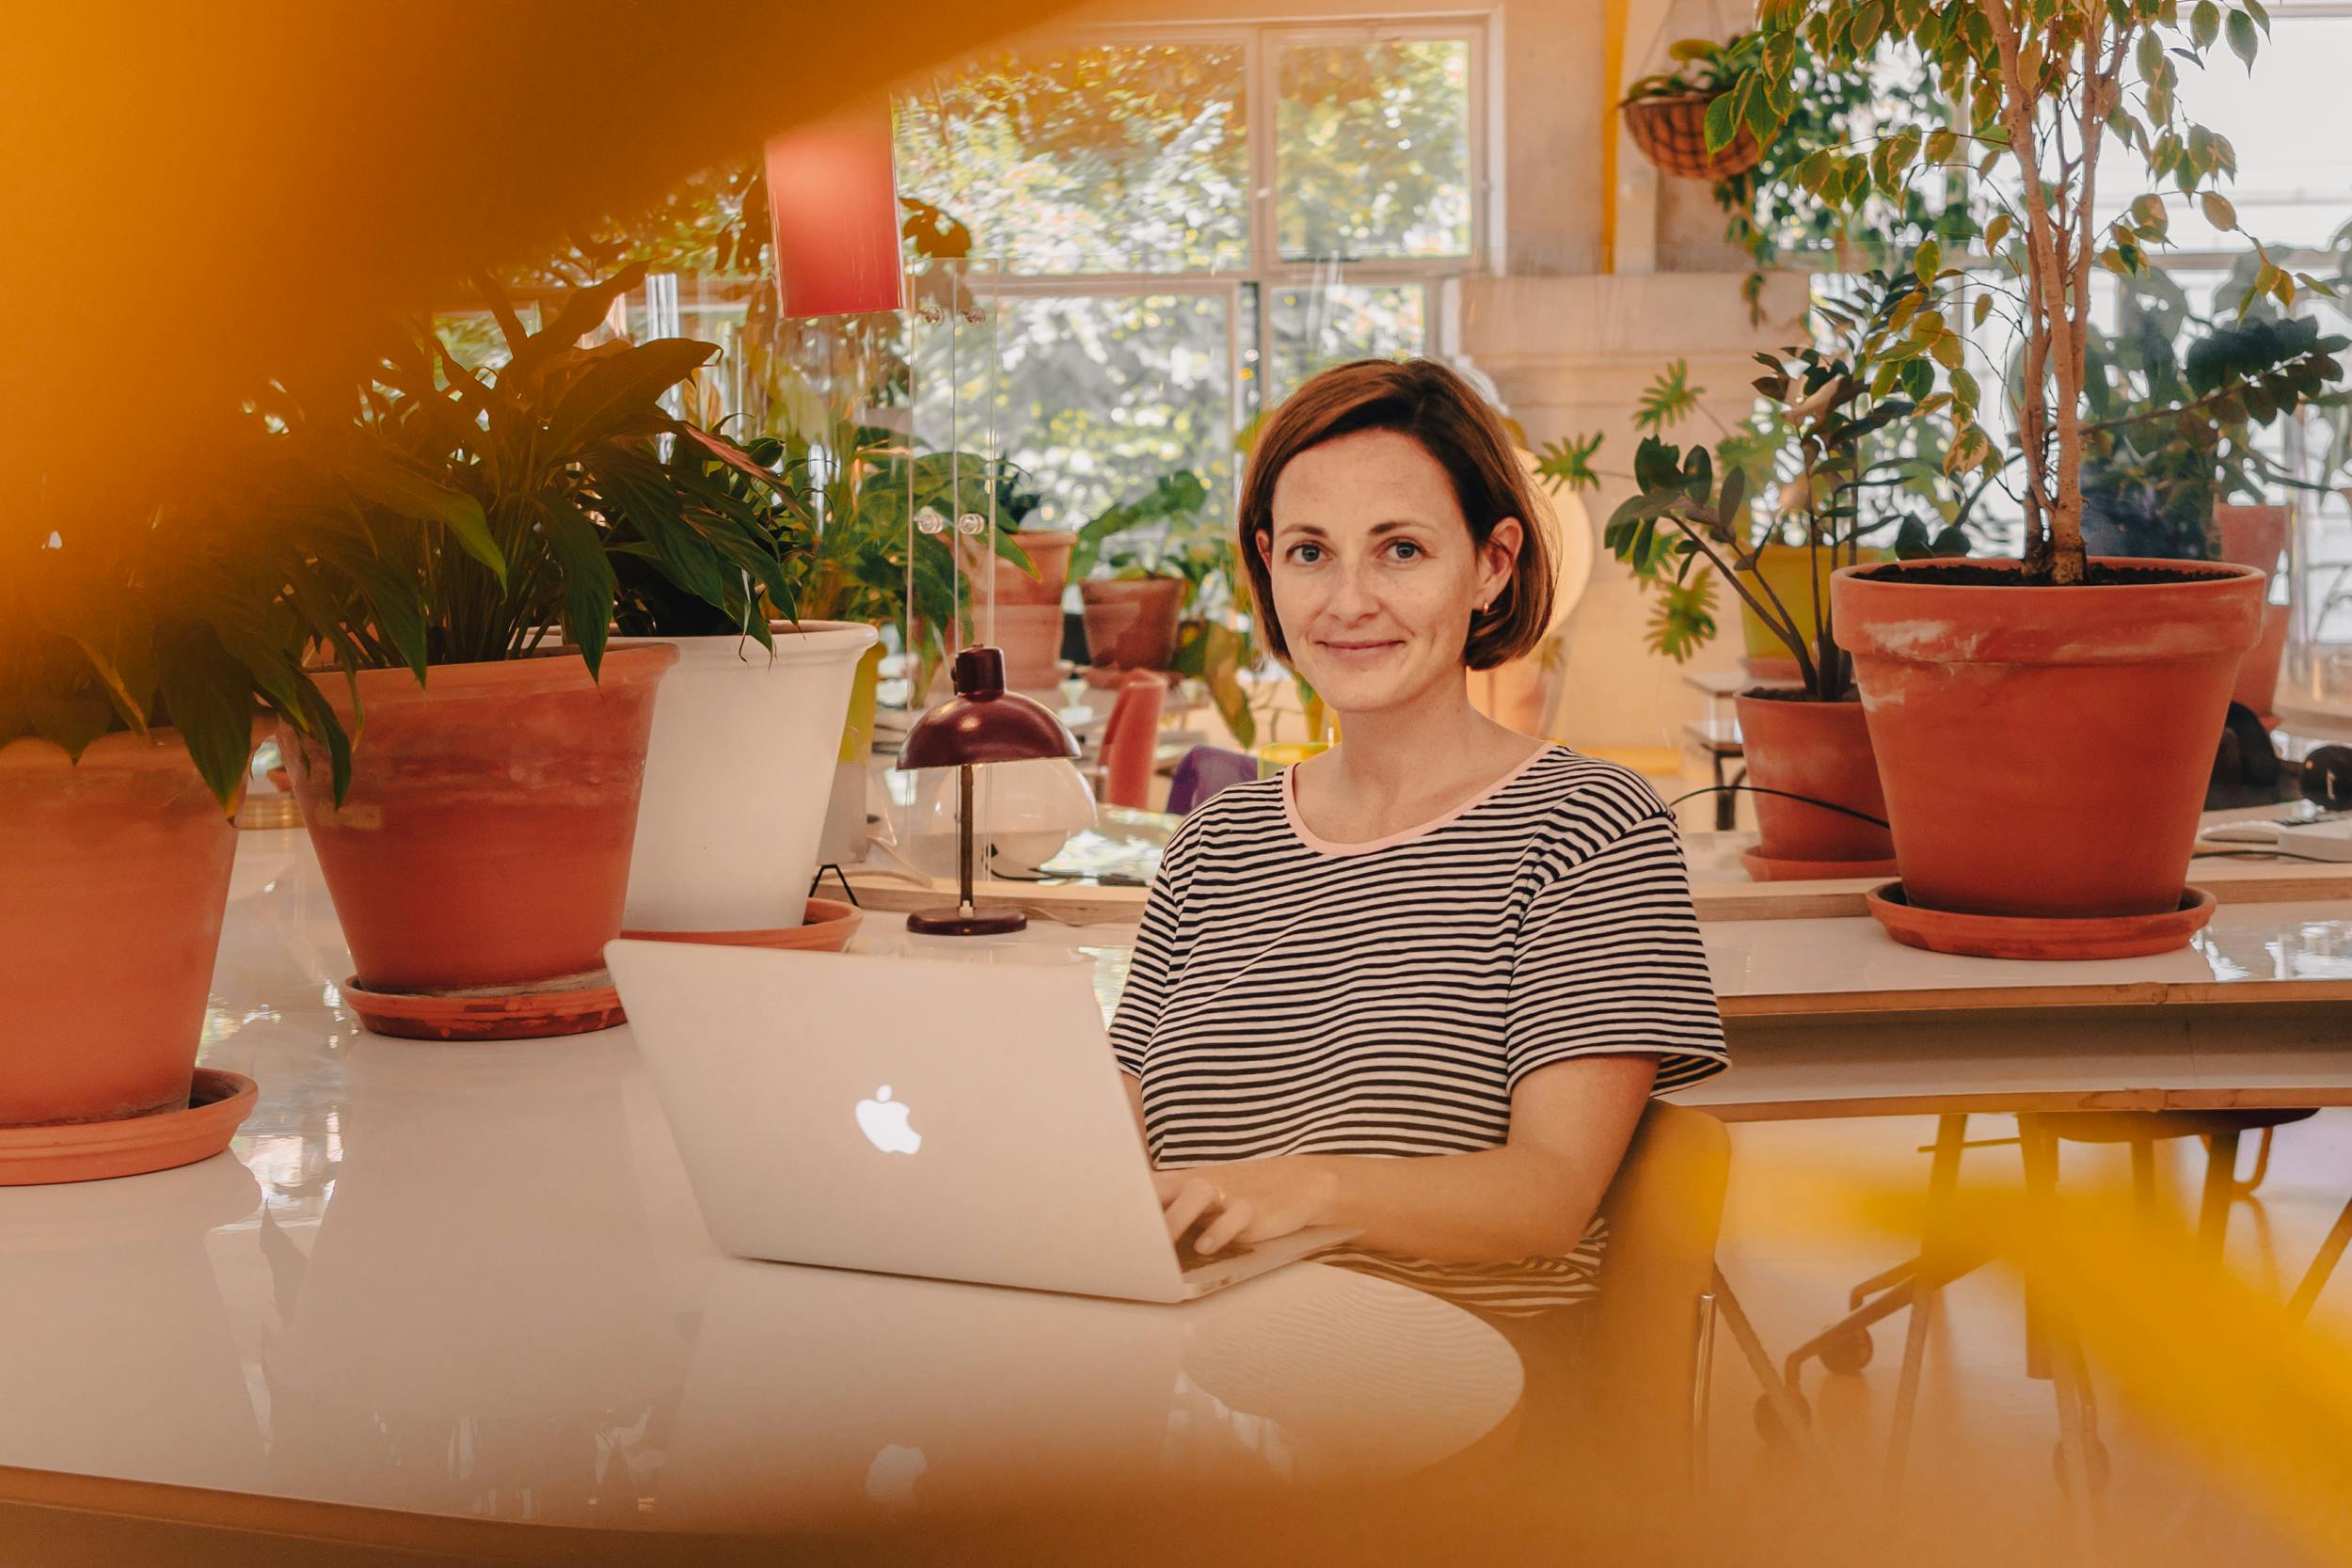 Mulher com cabelo curto sentada em frente a um computador, posando com um sorriso e cercada por vasos de plantas